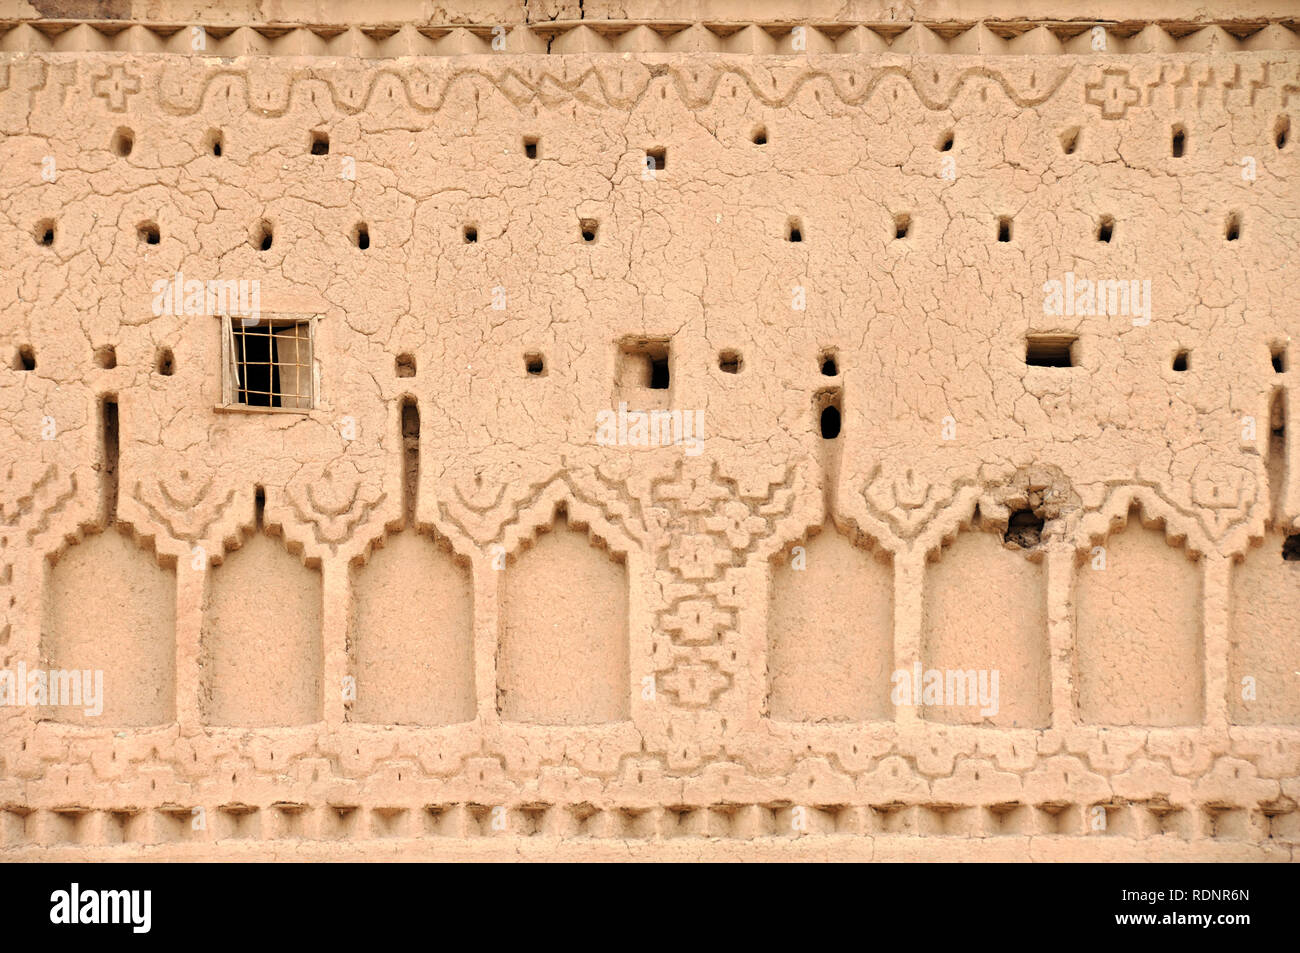 Adobe Schlamm Wand Details und Erdbau Muster Casbah Ouarzazate Marokko Stockfoto